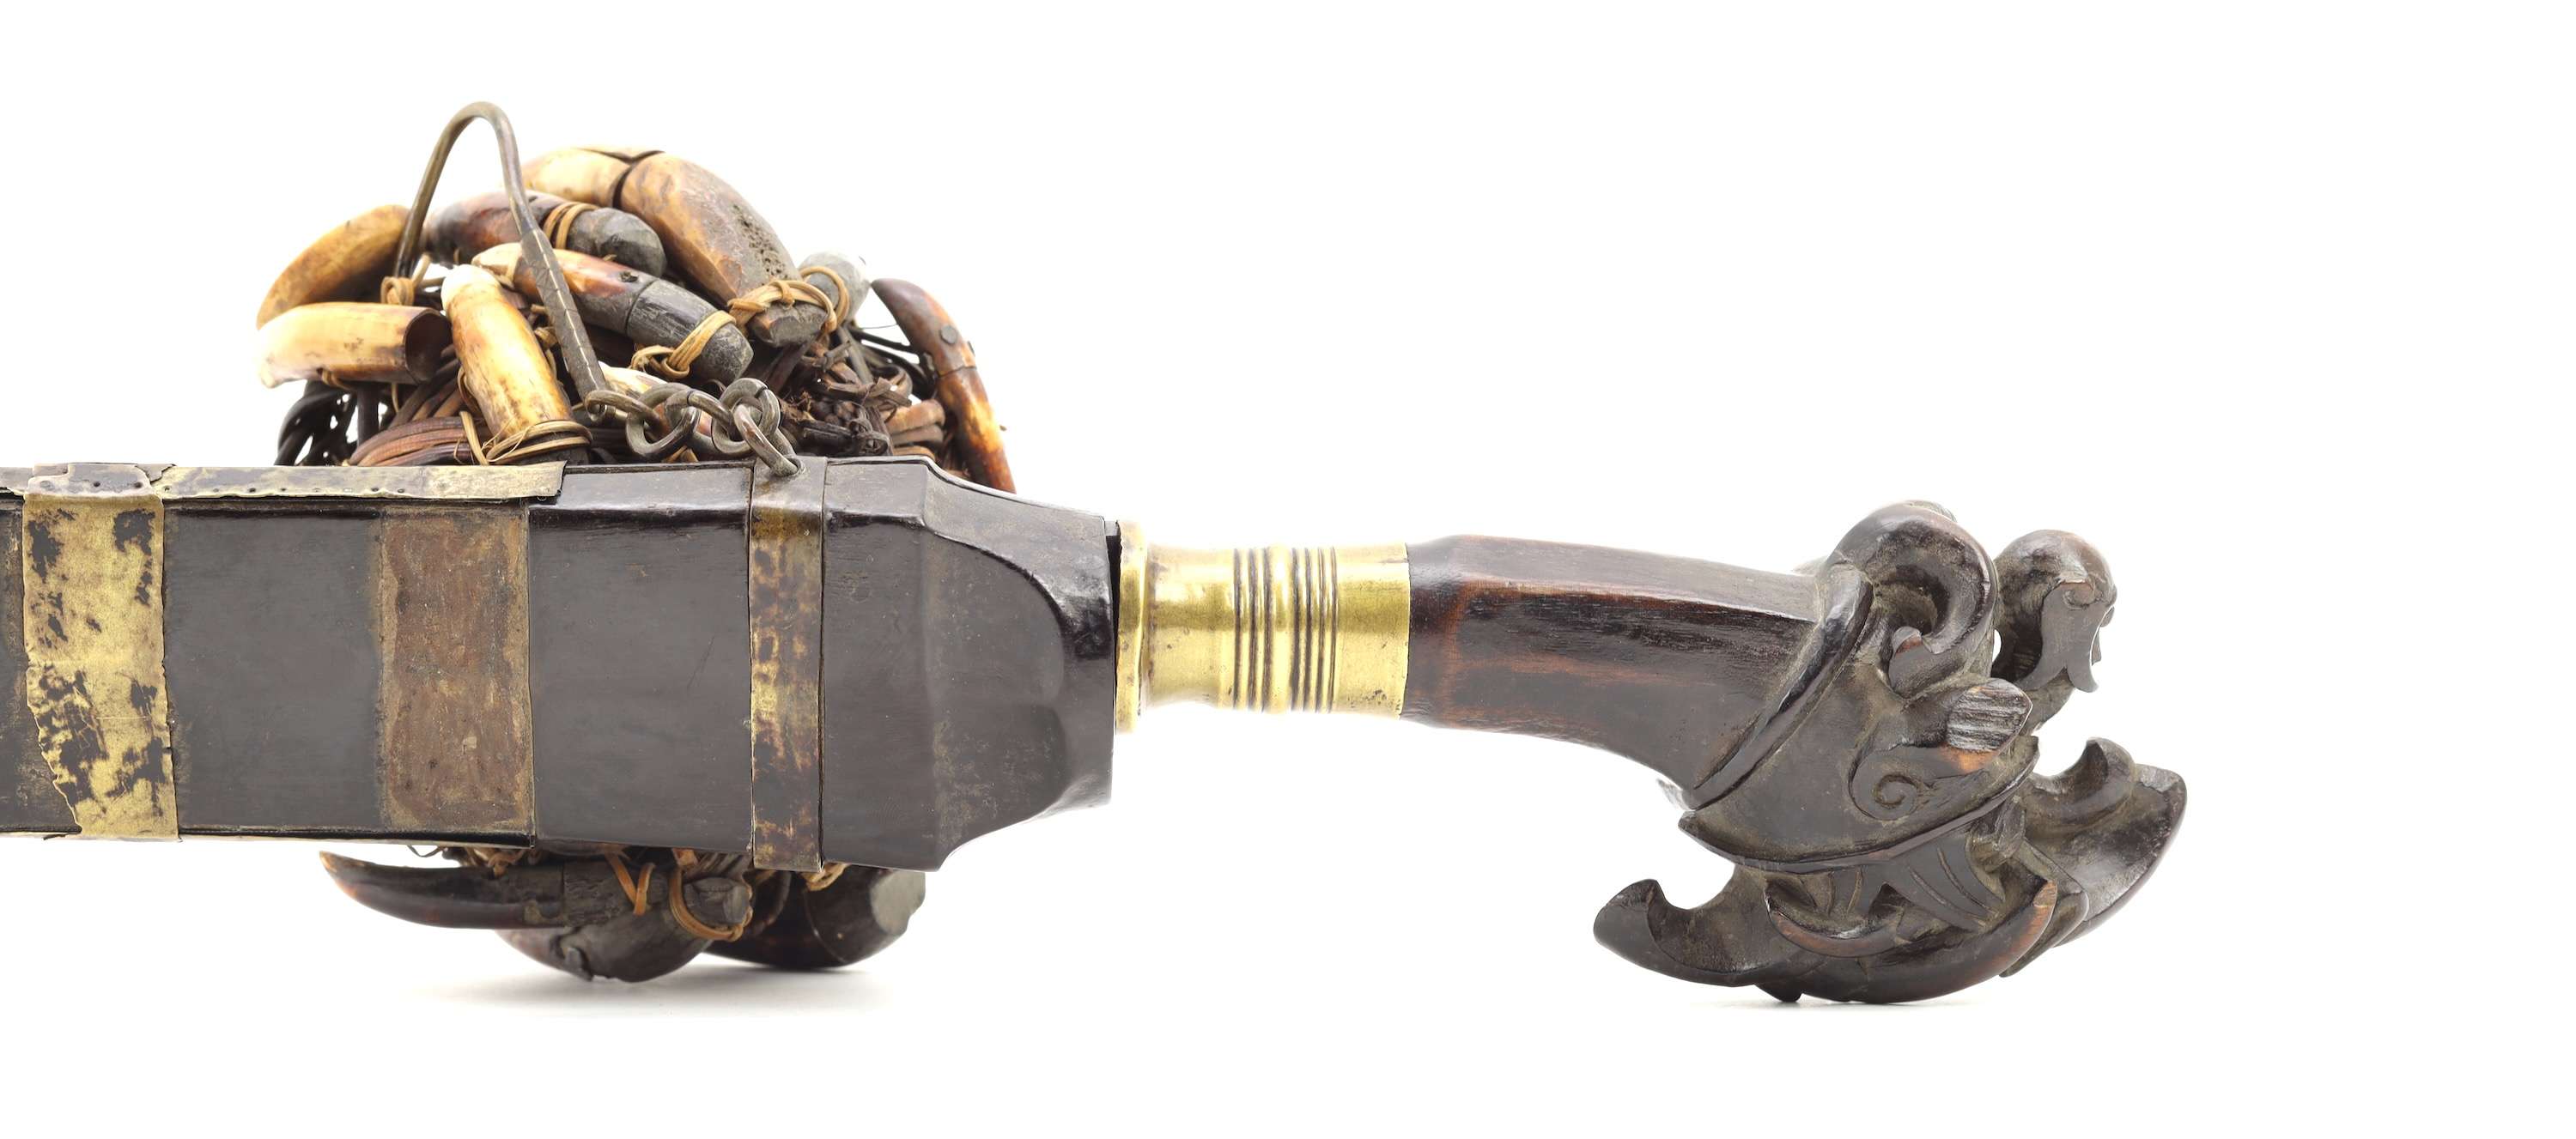 Fine and complete antique Nias sword called belatu